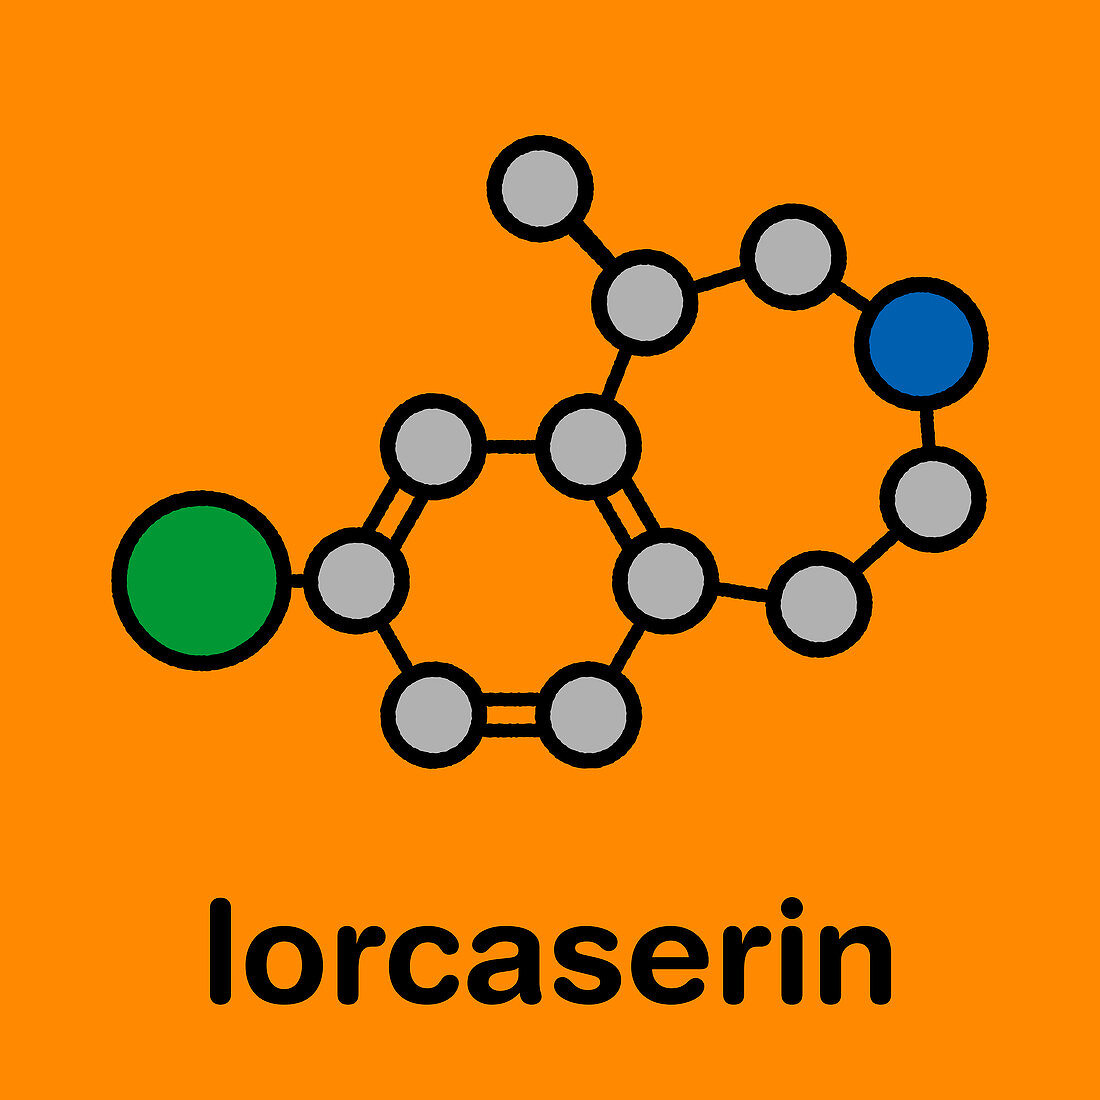 Lorcaserin obesity drug, molecular model